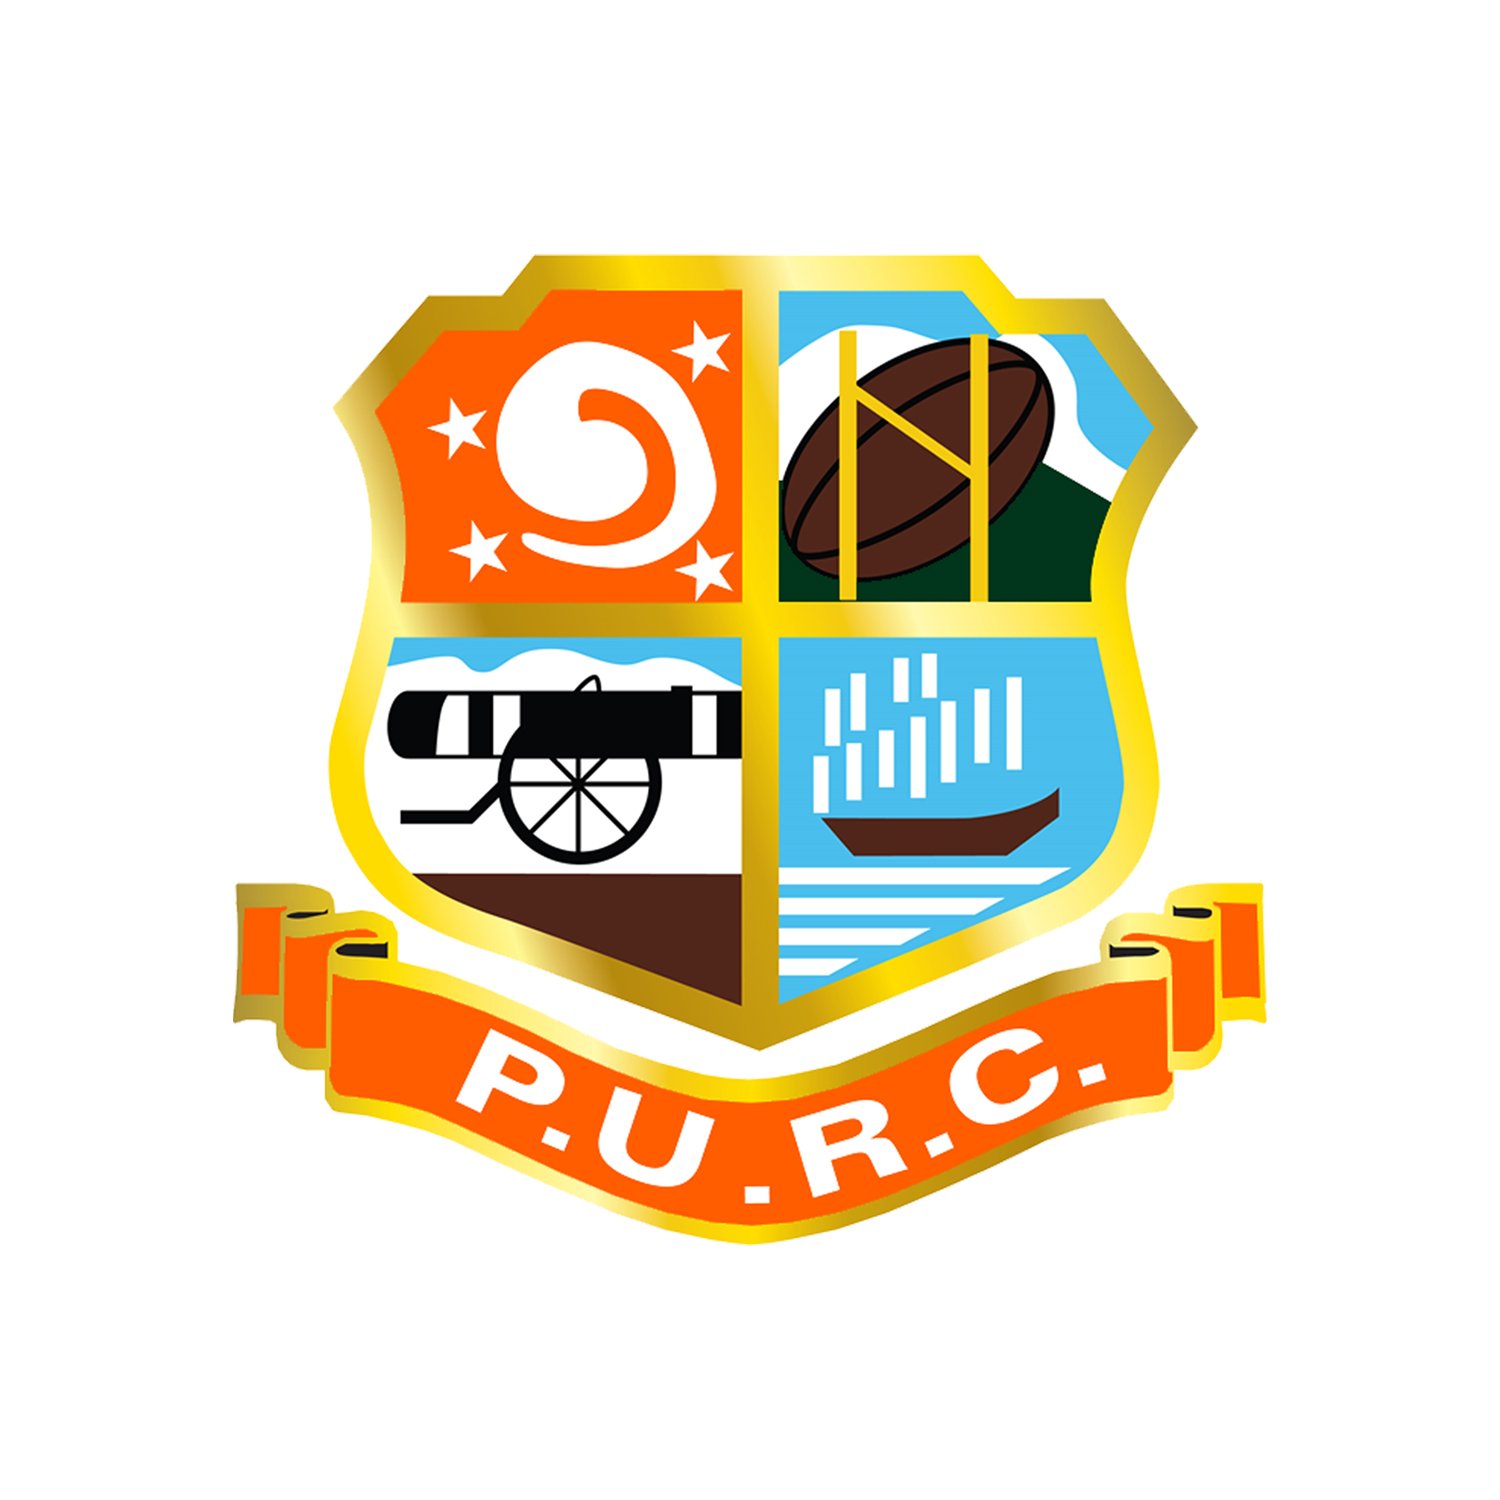 PURC_logo.jpg